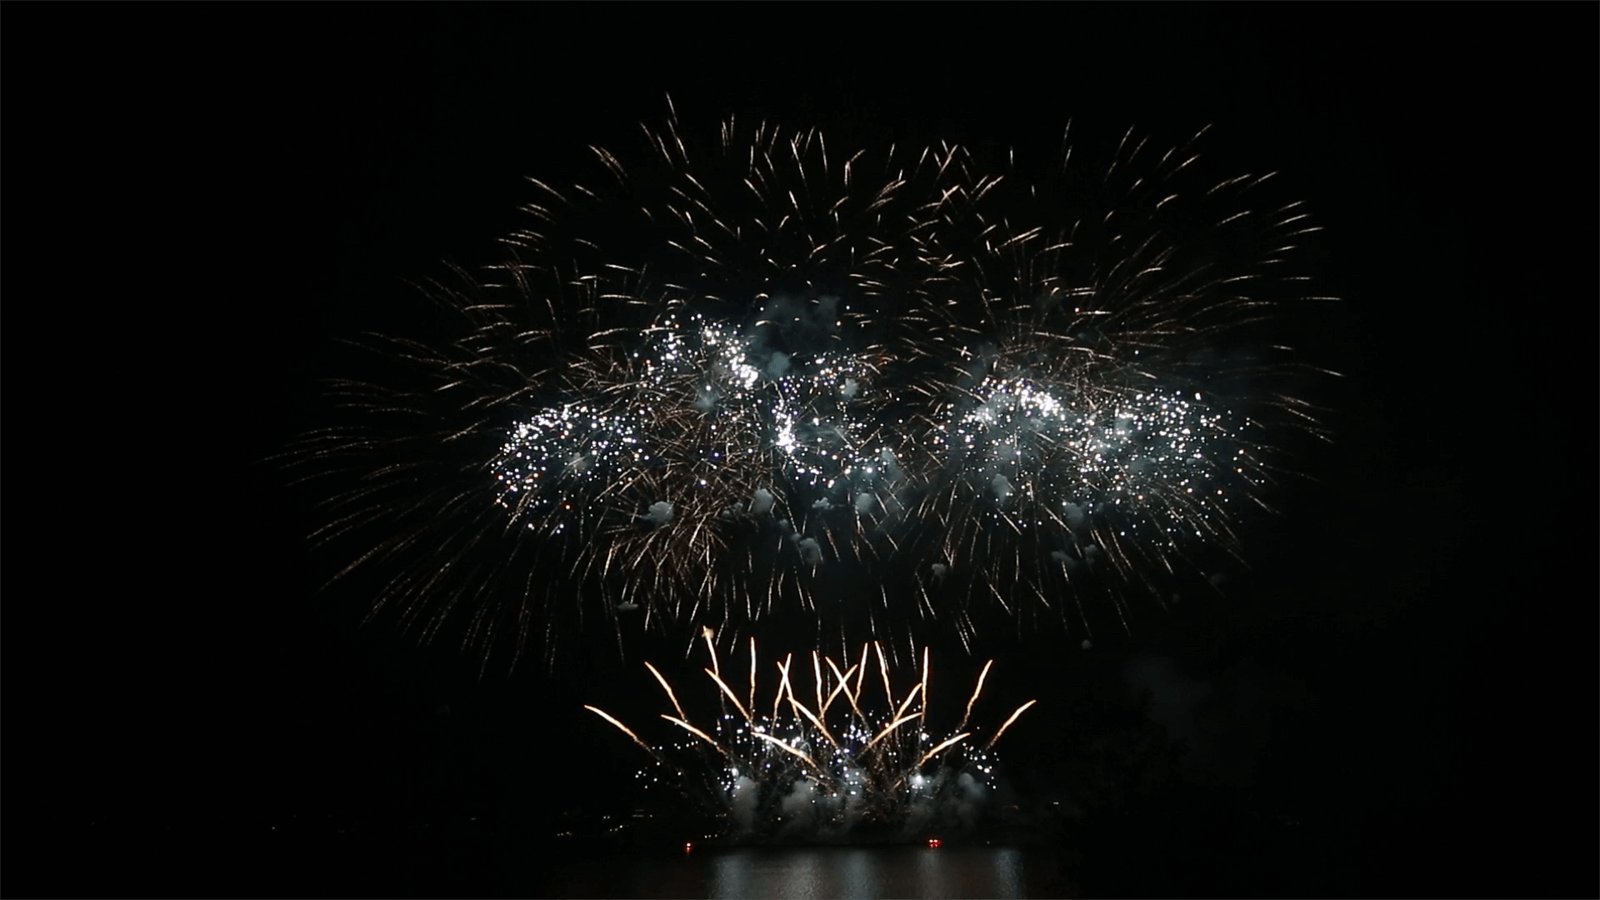 nico europe feuerwerke silkeborg fireworks regatta 2017 gigantisches feuerwerk mit zahlreichen effekten auf drei ebenen